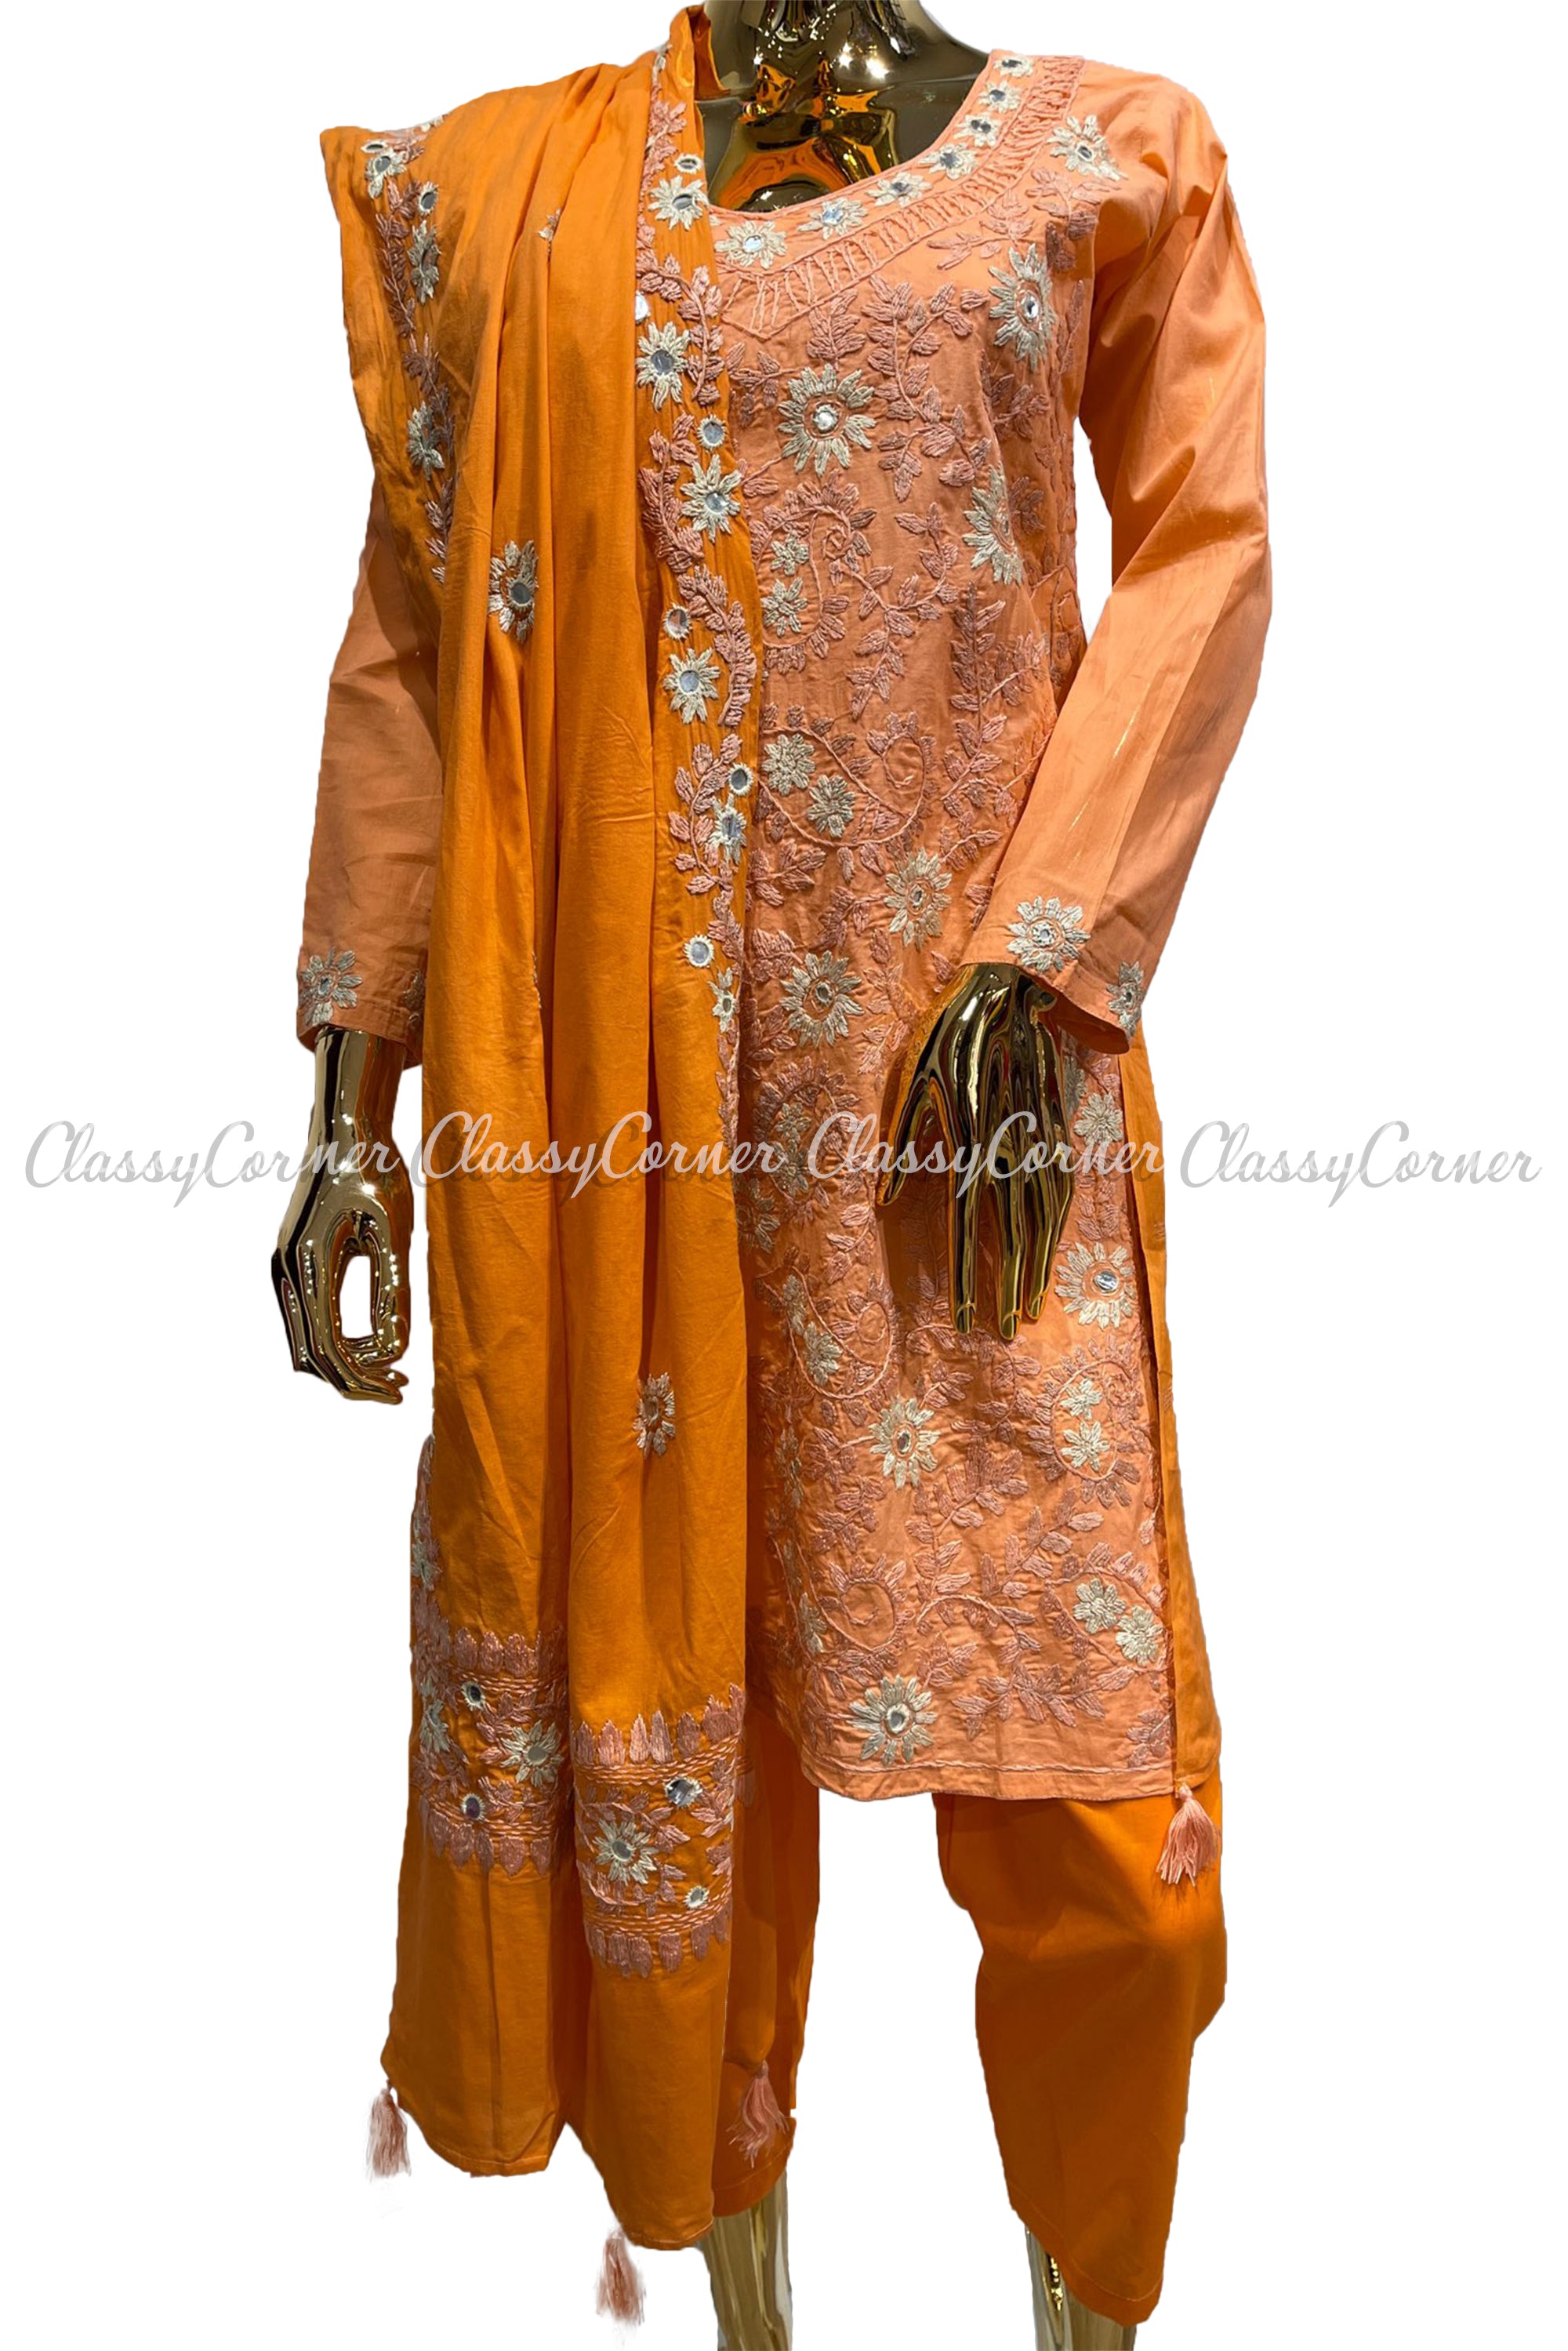 Peach Orange Hand Embroidered Cotton Salwar Kameez Suit - Classy Corner